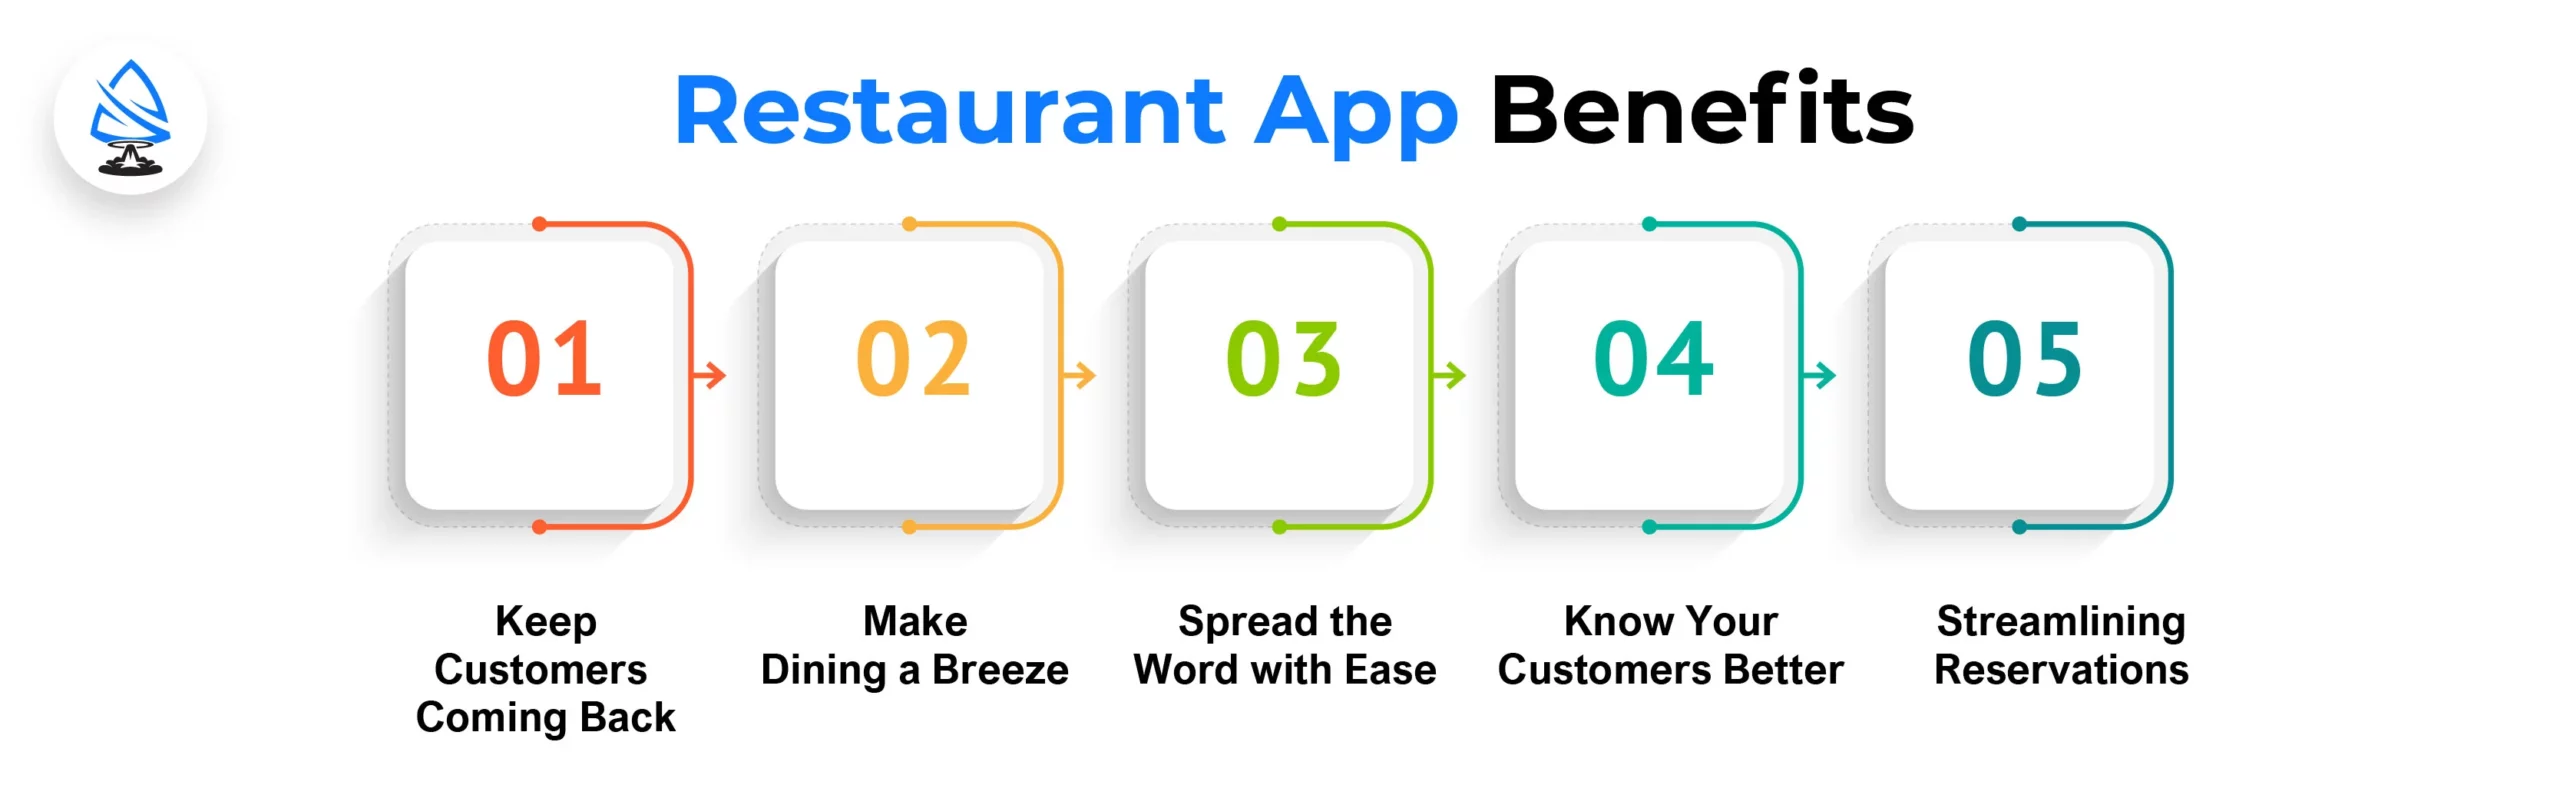 Restaurant App Benefits 